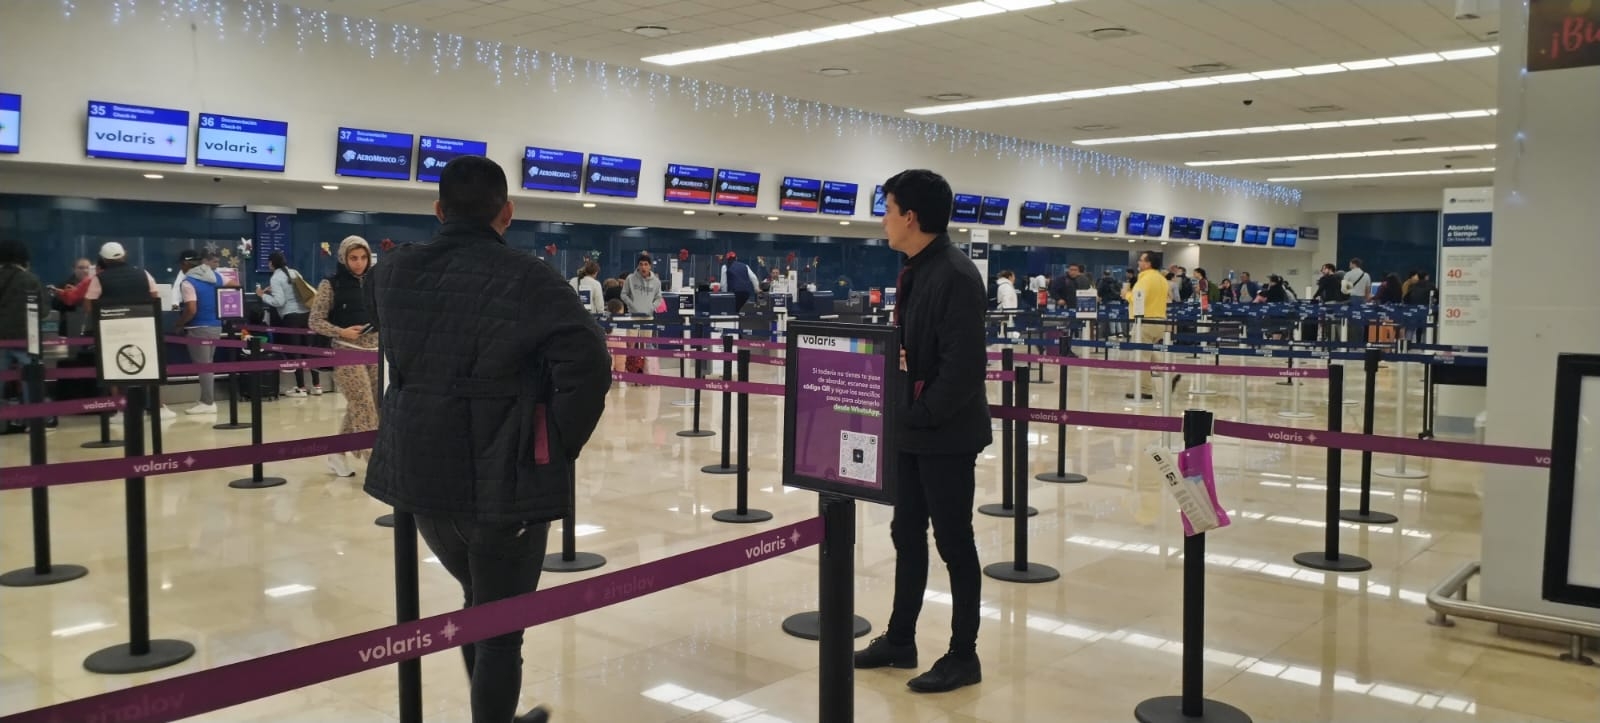 Los vuelos han despegado con anticipación en el aeropuerto de Mérida